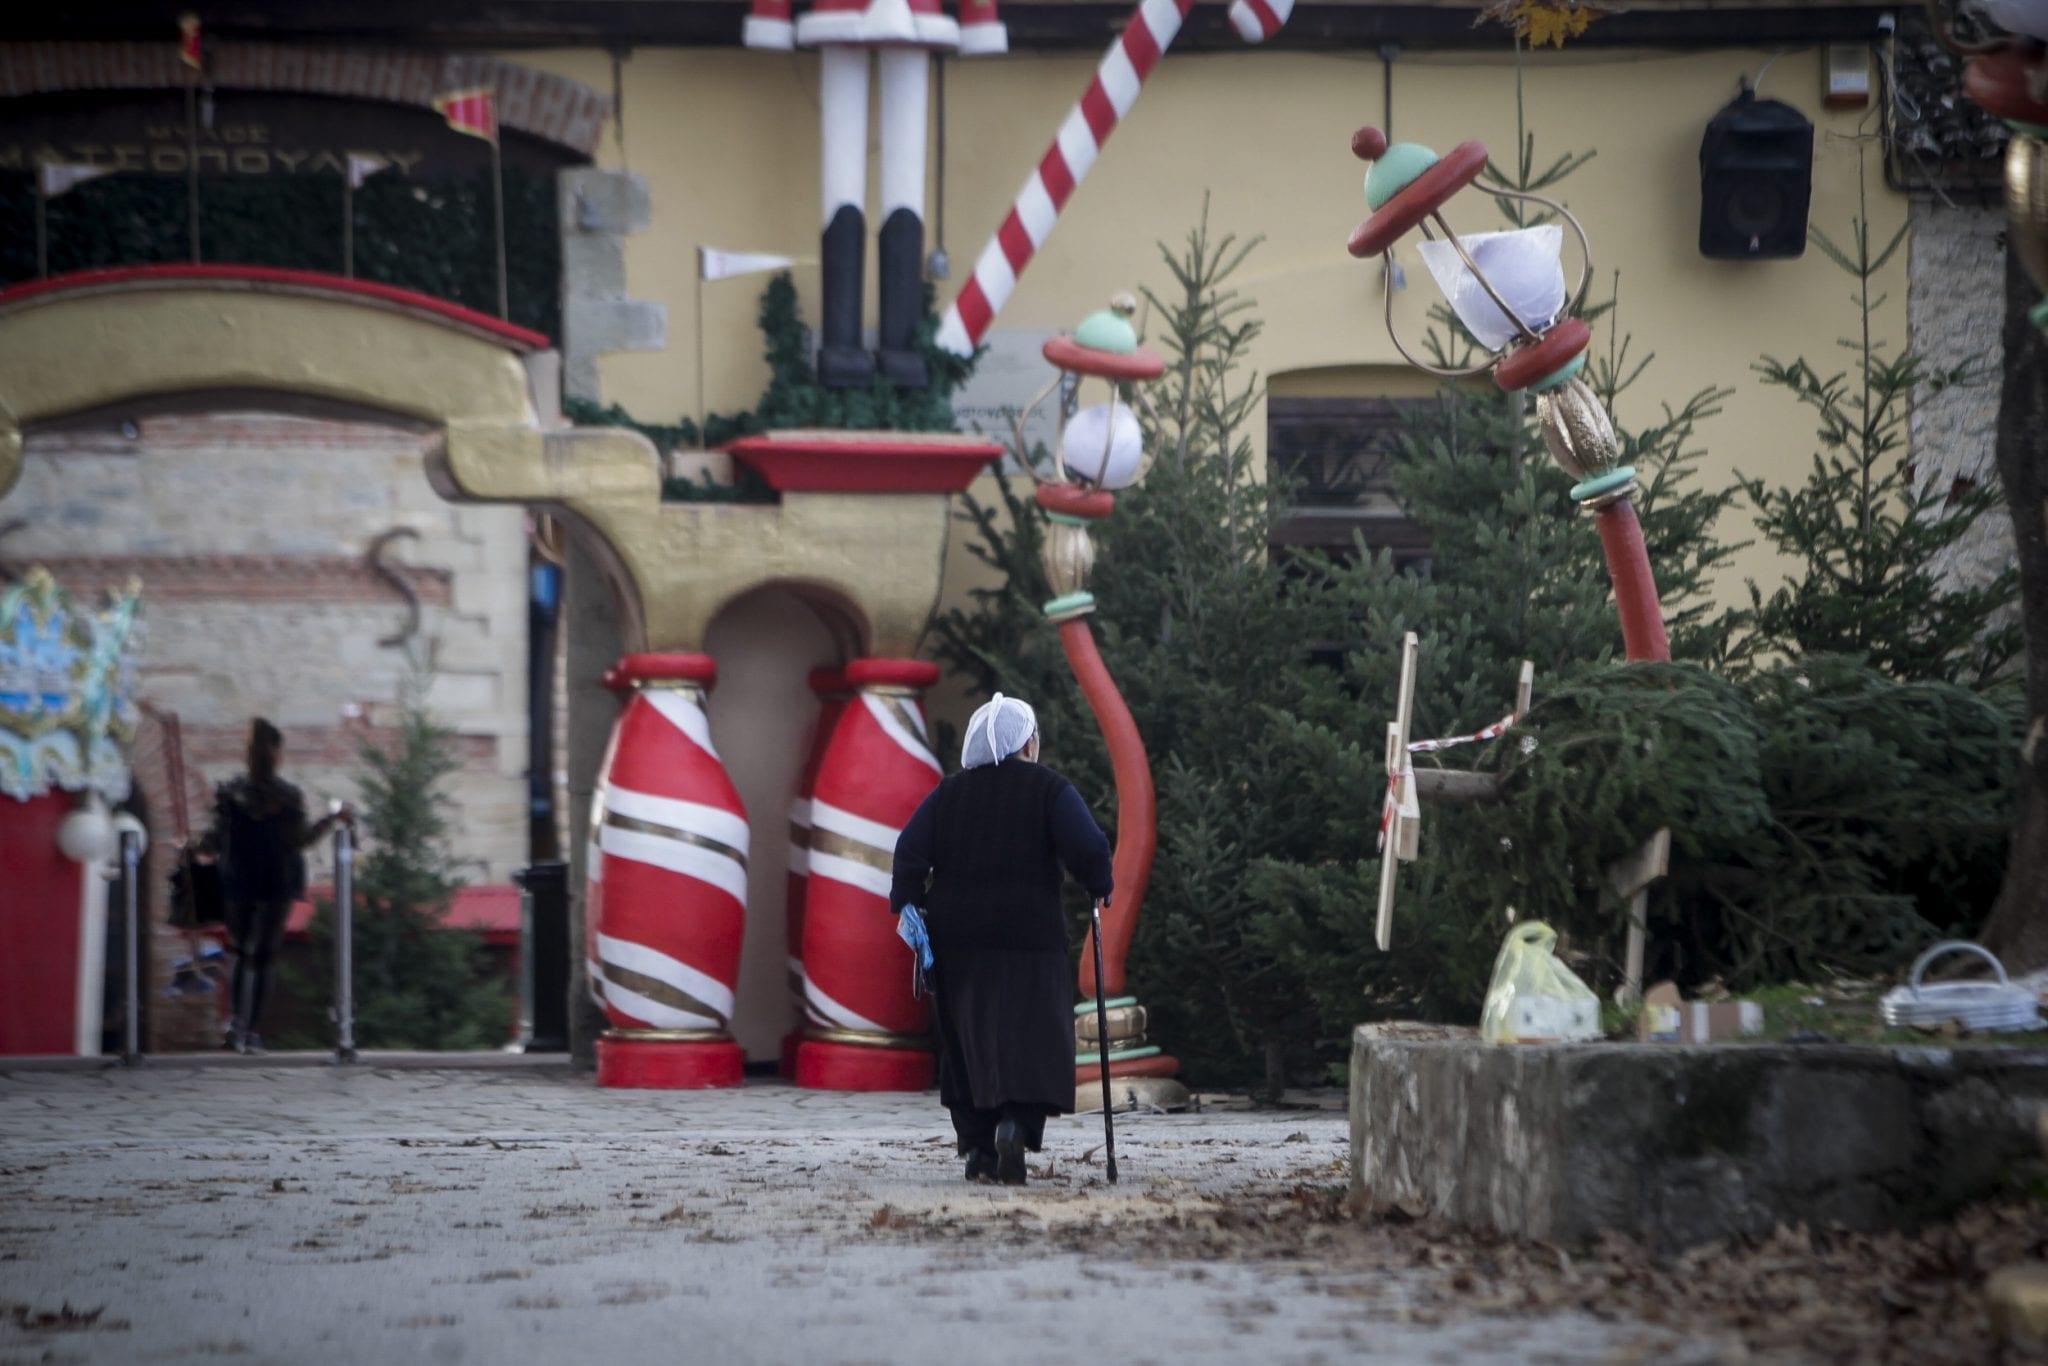 Μύλος των Ξωτικών: Έτοιμο να υποδεχτεί μικρούς και μεγάλους το μεγαλύτερο Χριστουγεννιάτικο πάρκο της Ελλάδας